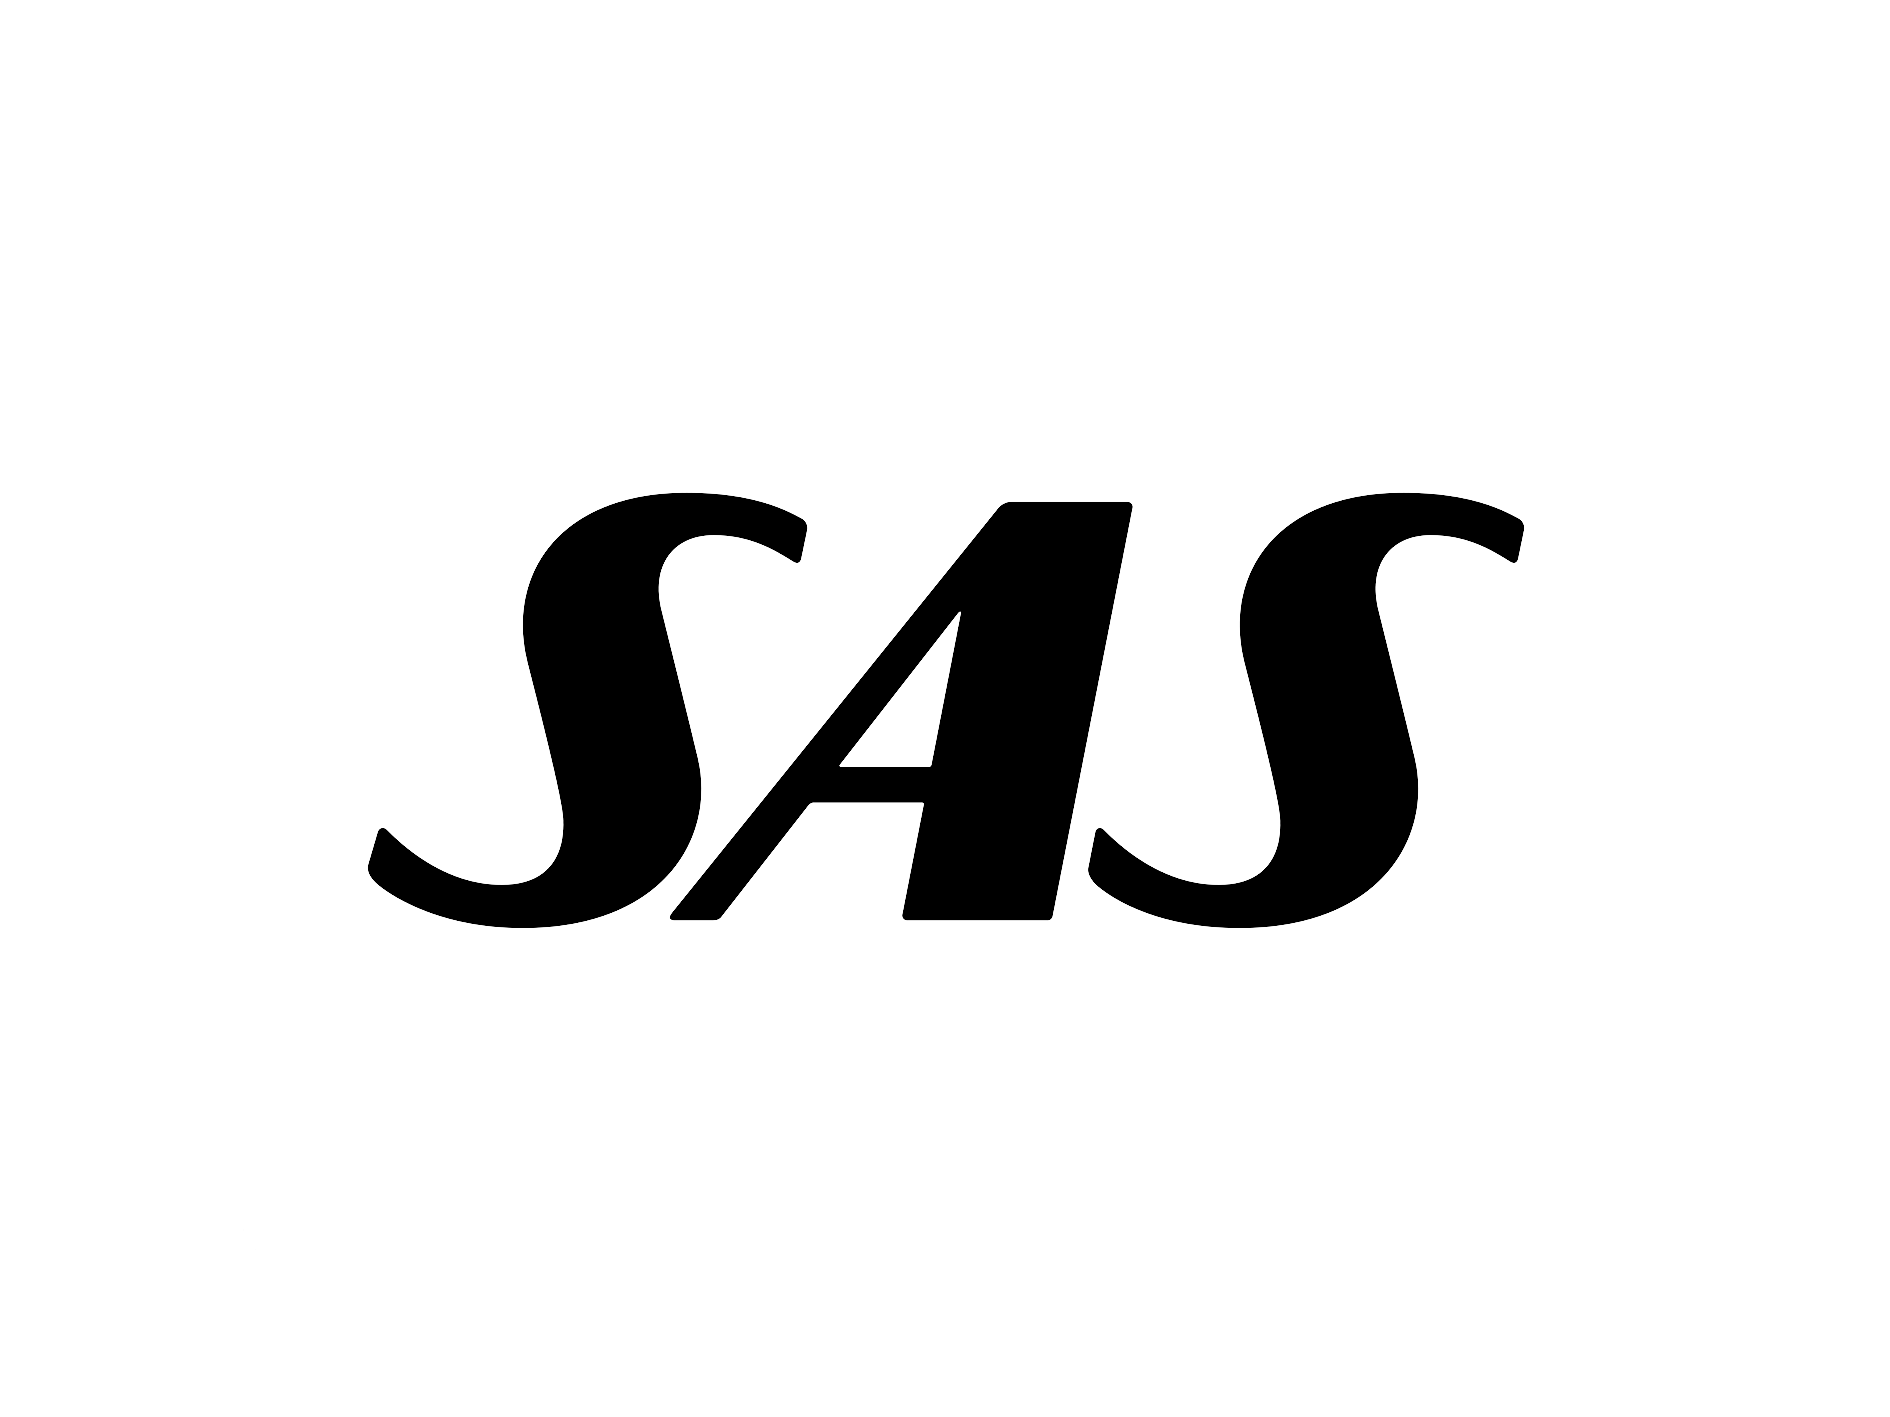 sas_logo